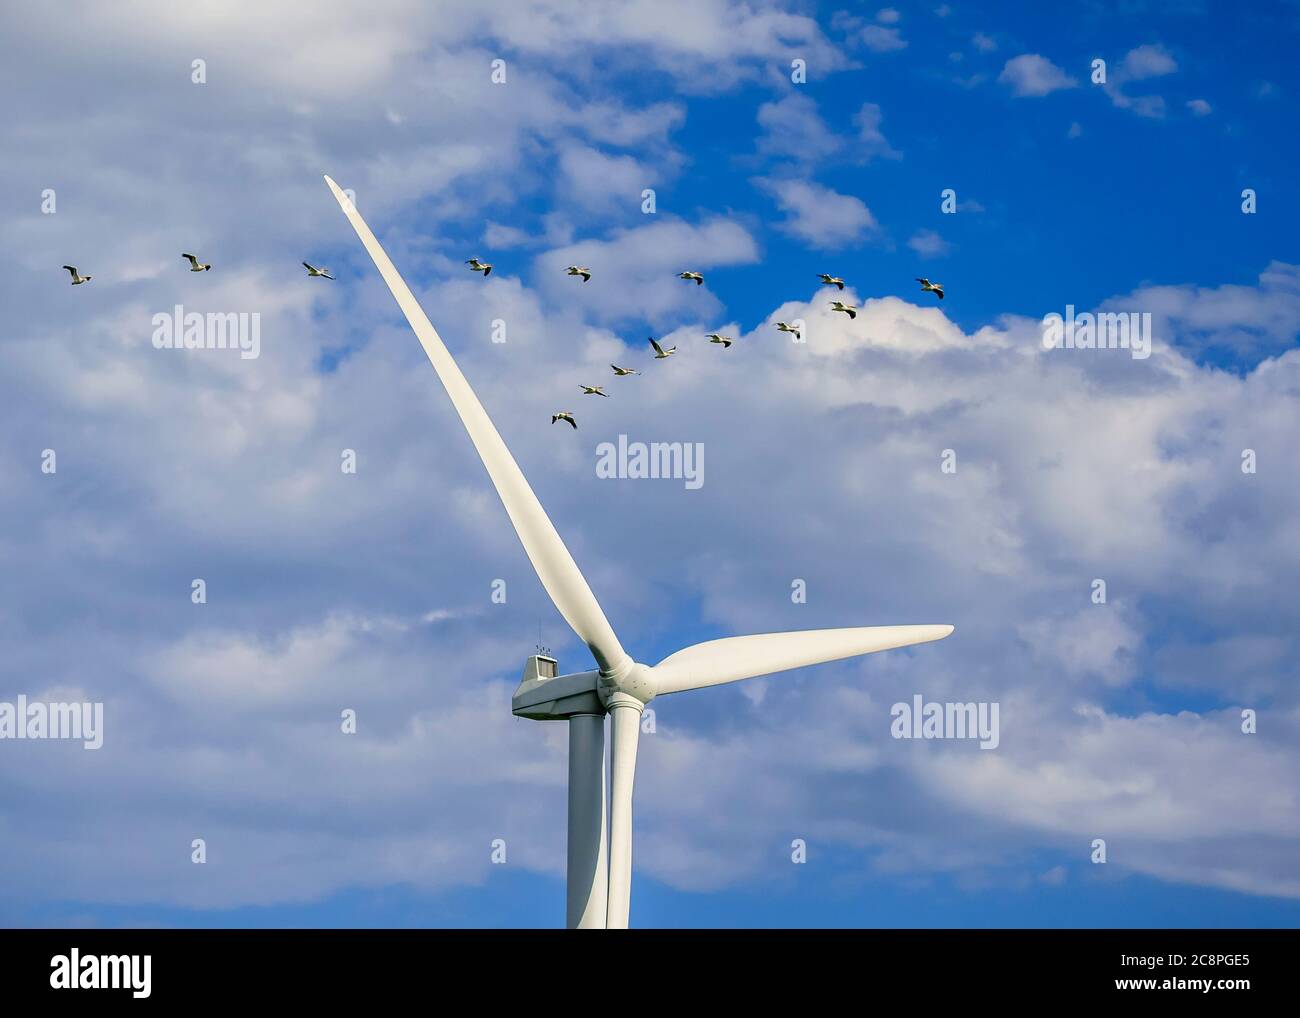 Pélicans blancs américains volant près d'une éolienne, St. Leon, Manitoba, Canada. Banque D'Images